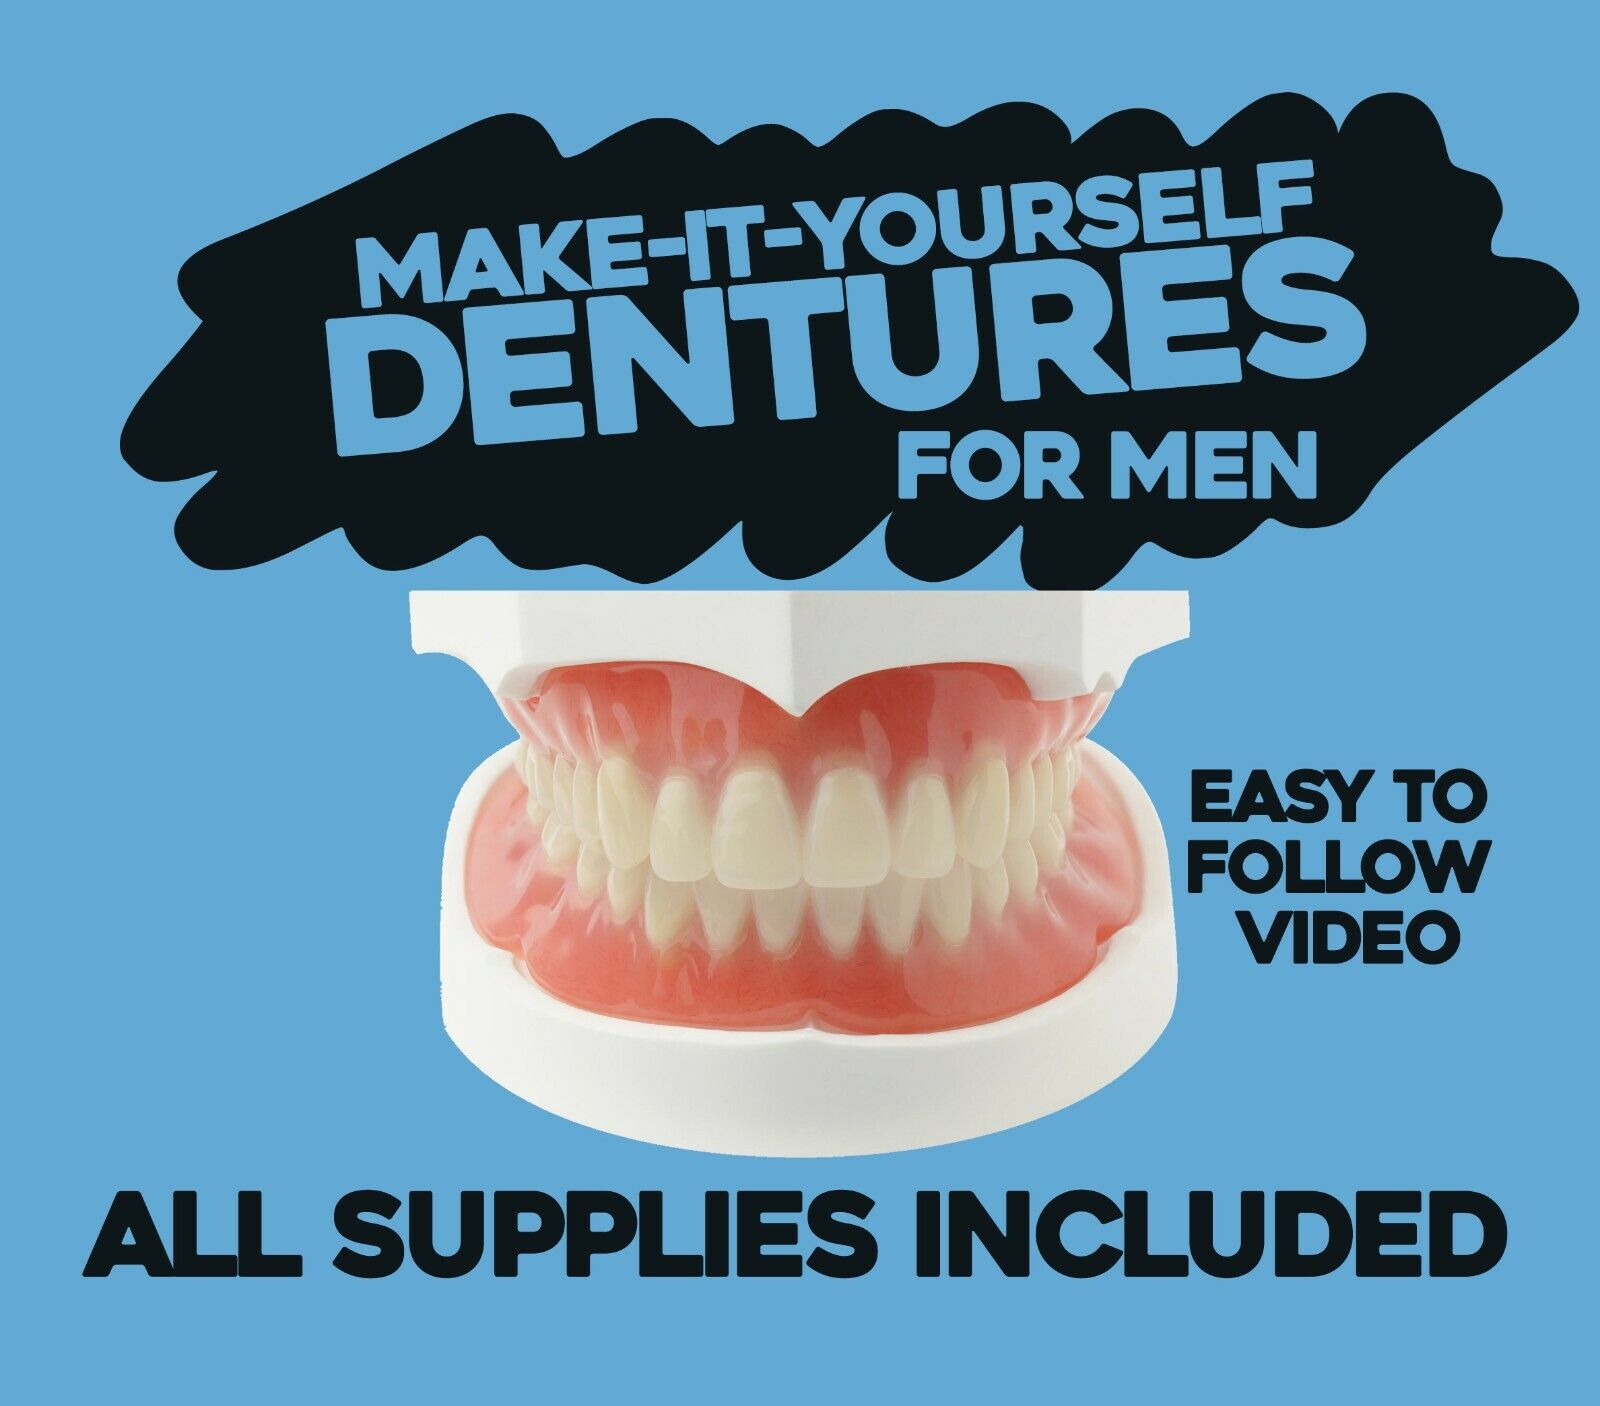 DIY Denture Kit - Homemade Dentures, Custom Dentures From Home